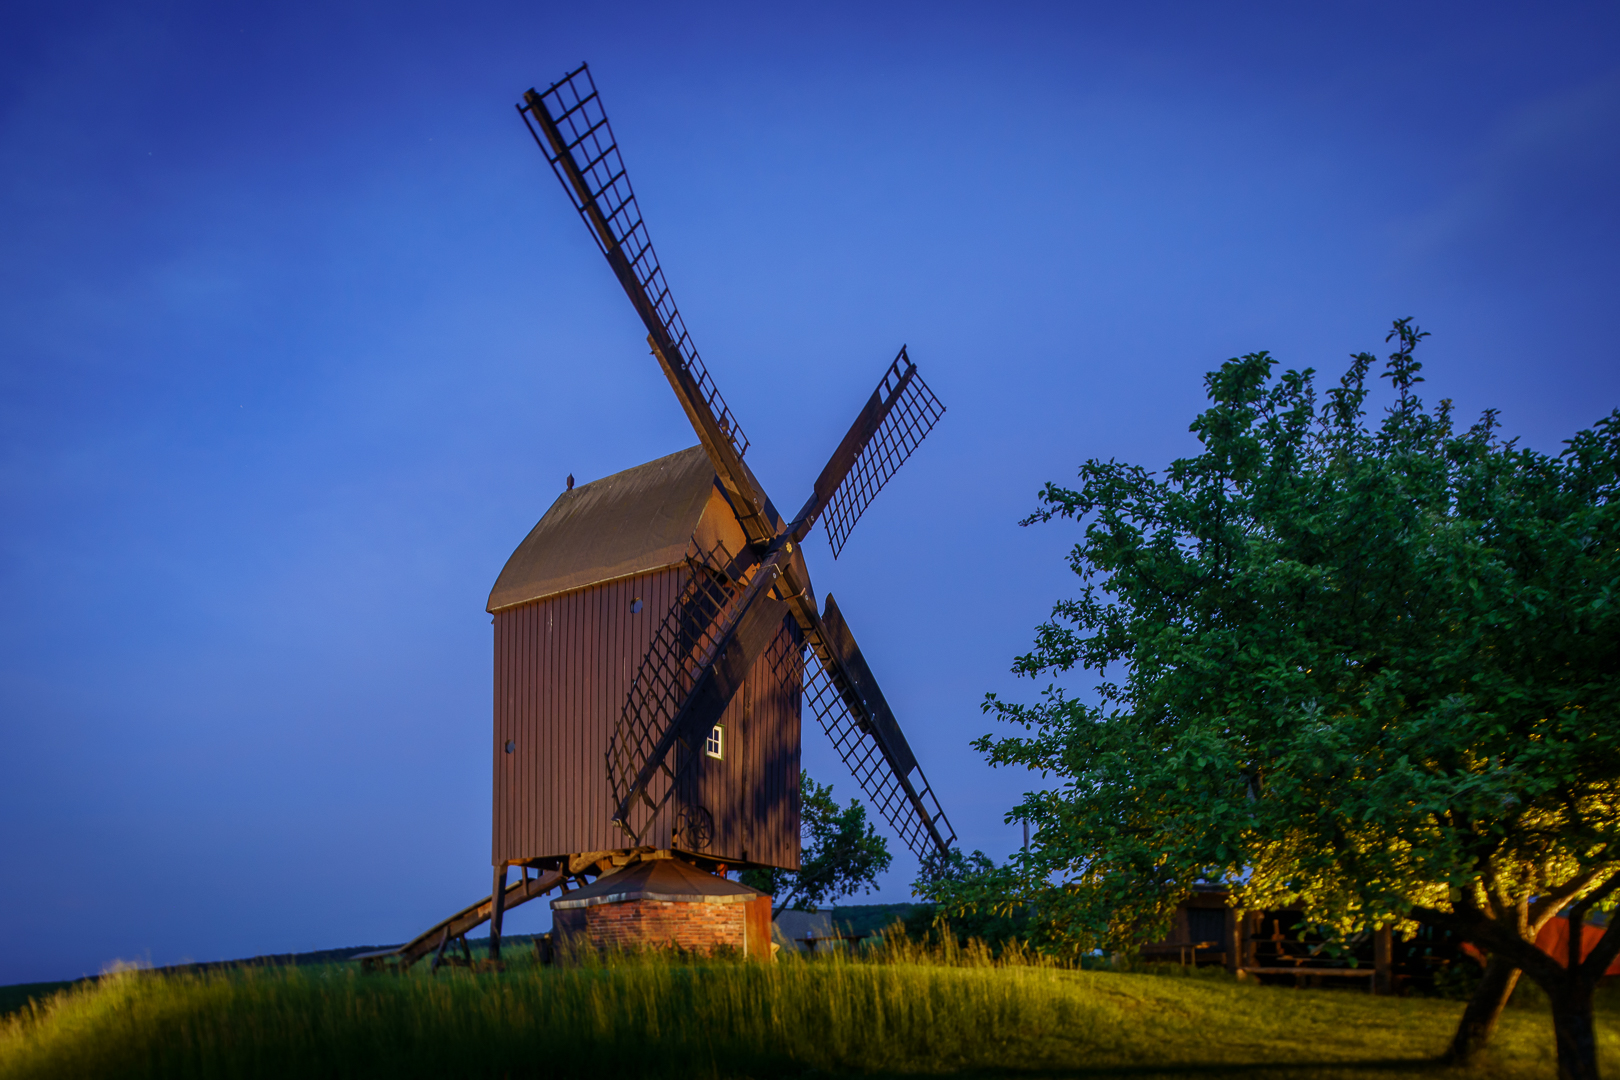 Die Windmühle in Anderbeck (2)